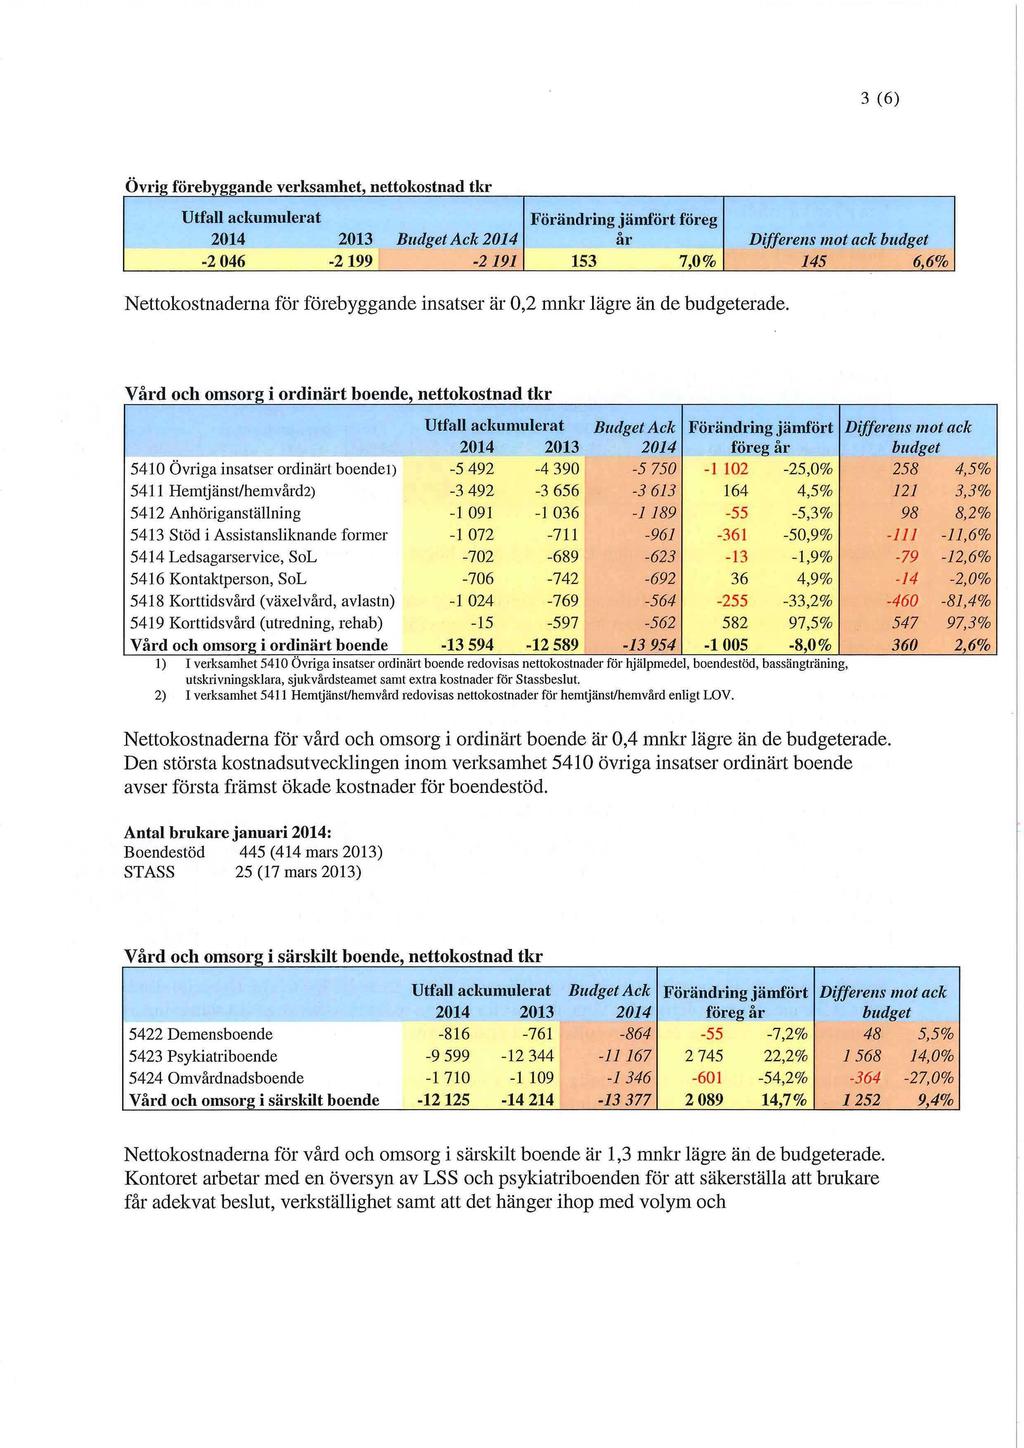 3 (6) Övrig förebyggande verksamhet, nettokostnad tkr Utfall ackumulerat 2014 2013 Budget Ack 2014 Förändring jämfört föreg år Differens mot ack budget -2 046-2 199-2191 153 7,0% 145 6,6%